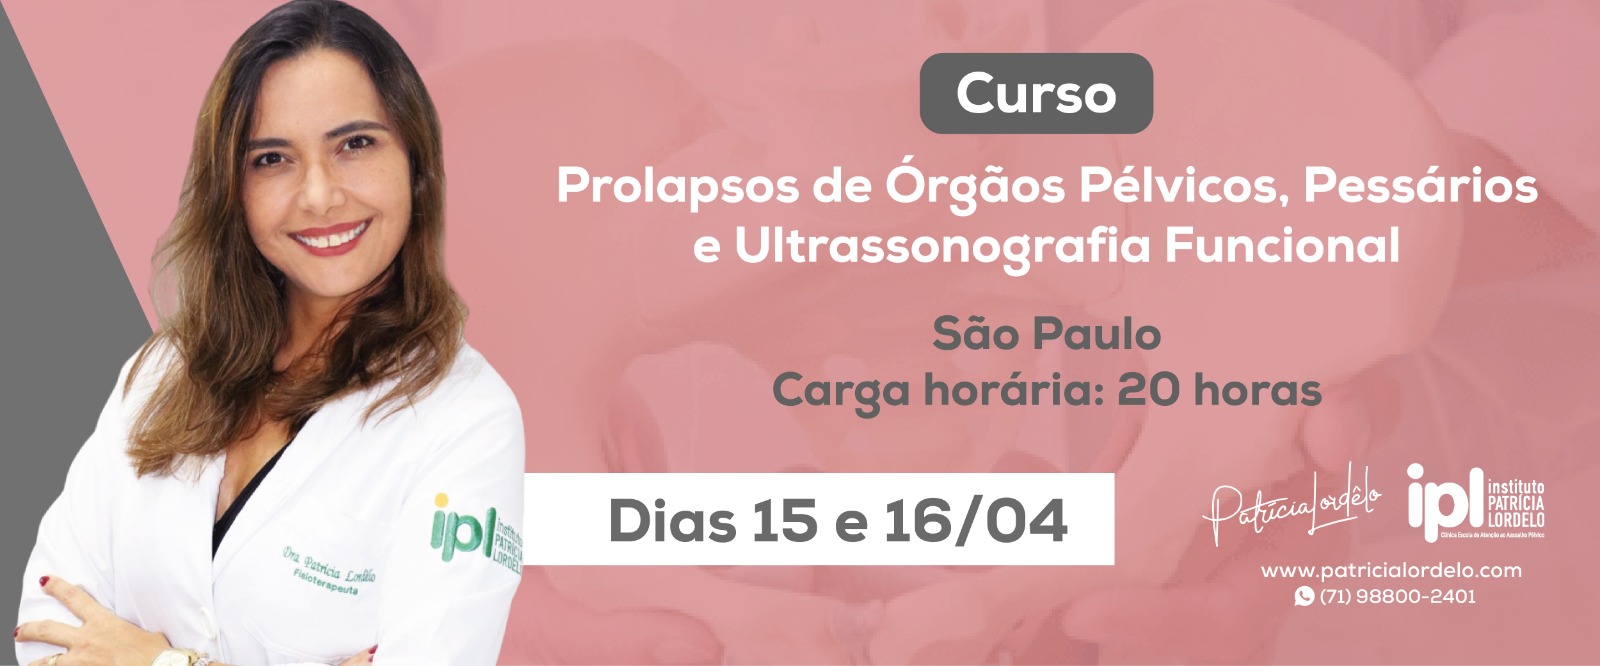 Prolapso de Órgãos Pélvicos, Pessários e Ultrassonografia Funcional - São Paulo